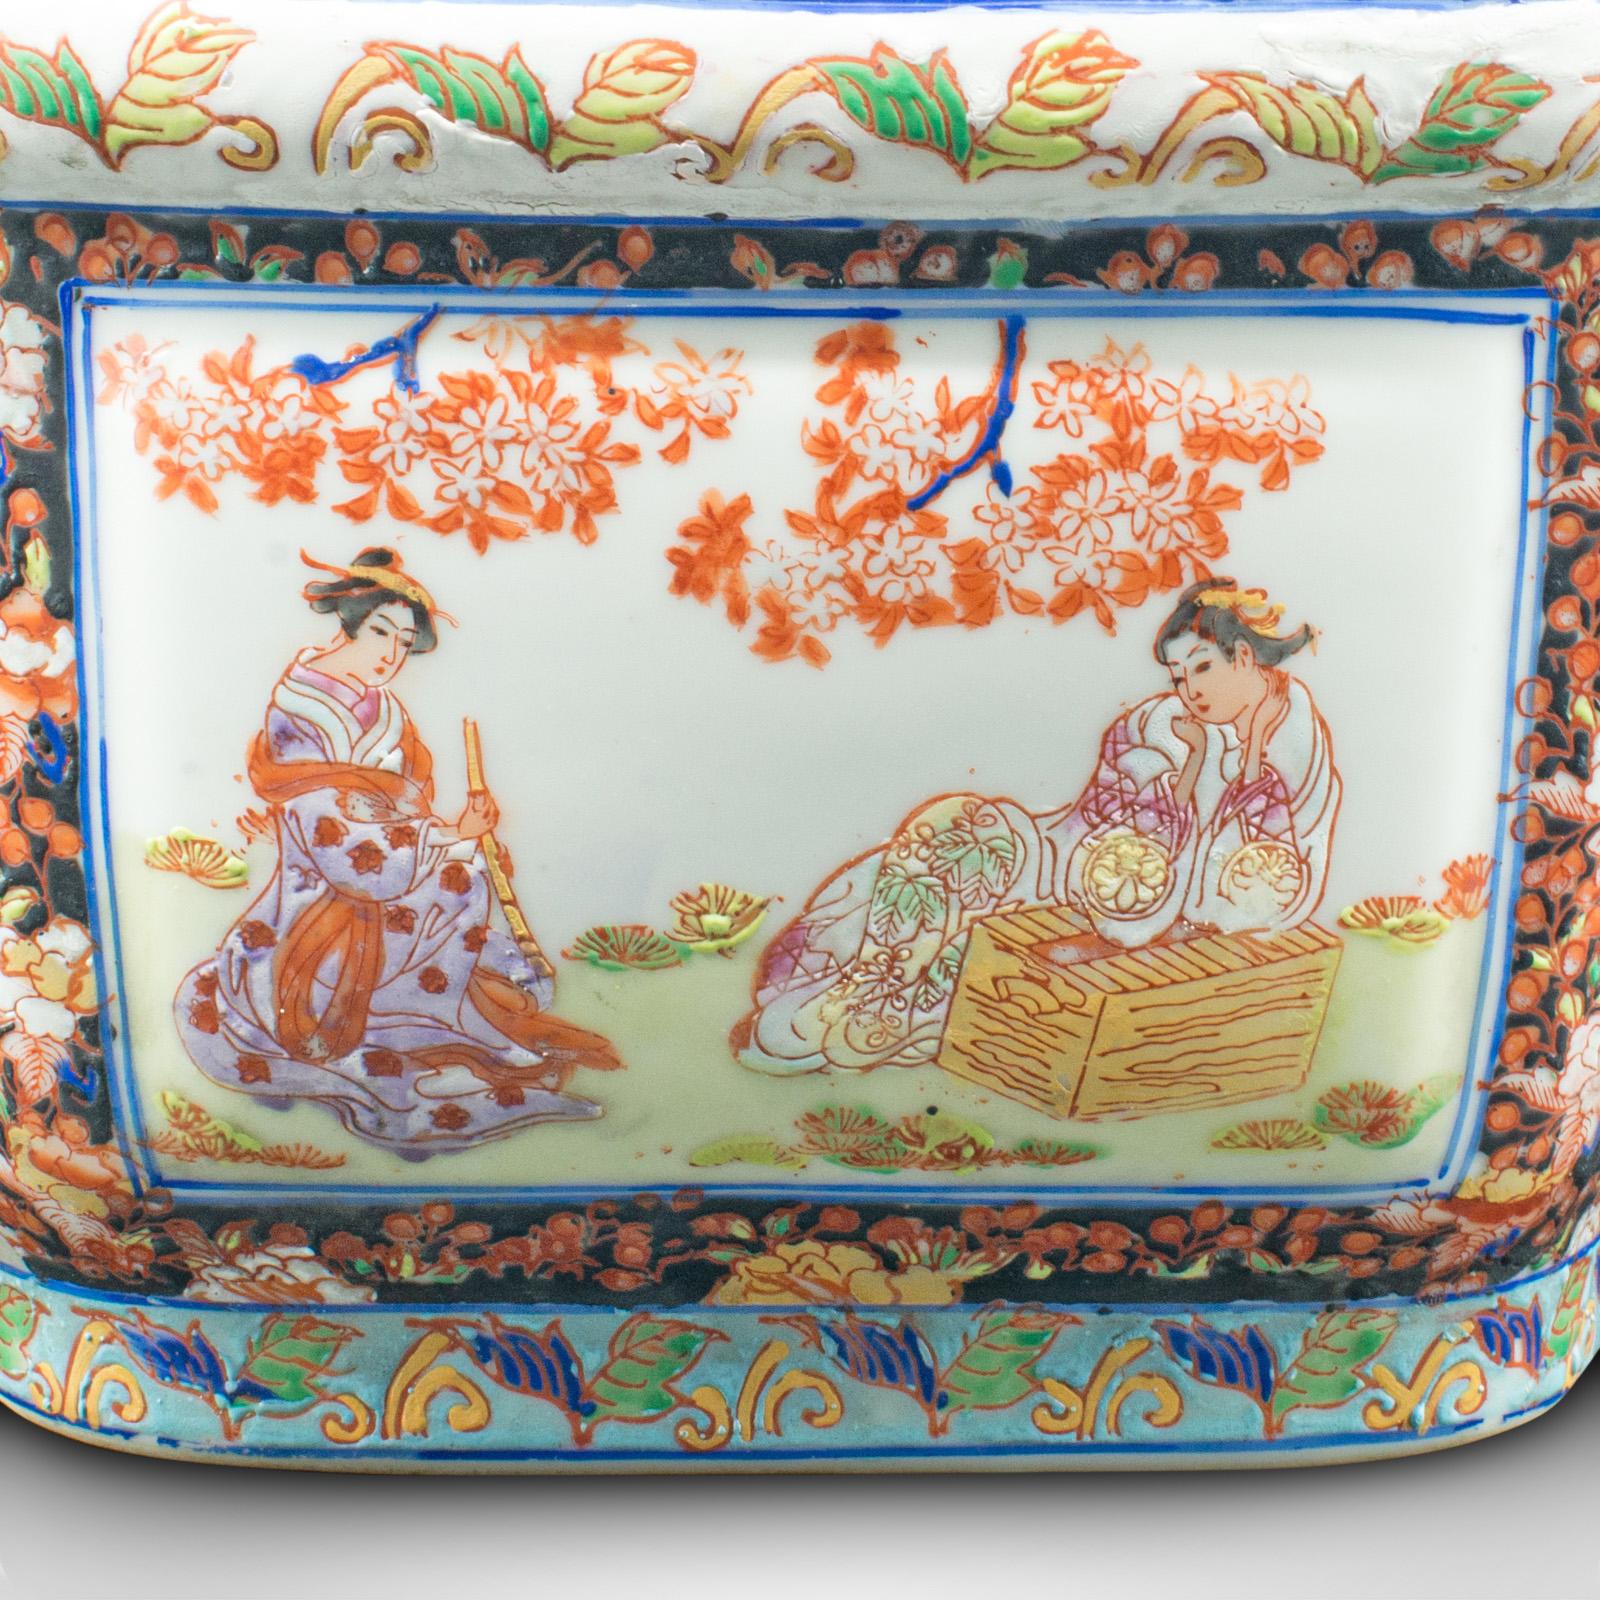 Antique Decorative Jardiniere, Chinese, Ceramic, Planter, Victorian, Circa 1900 6